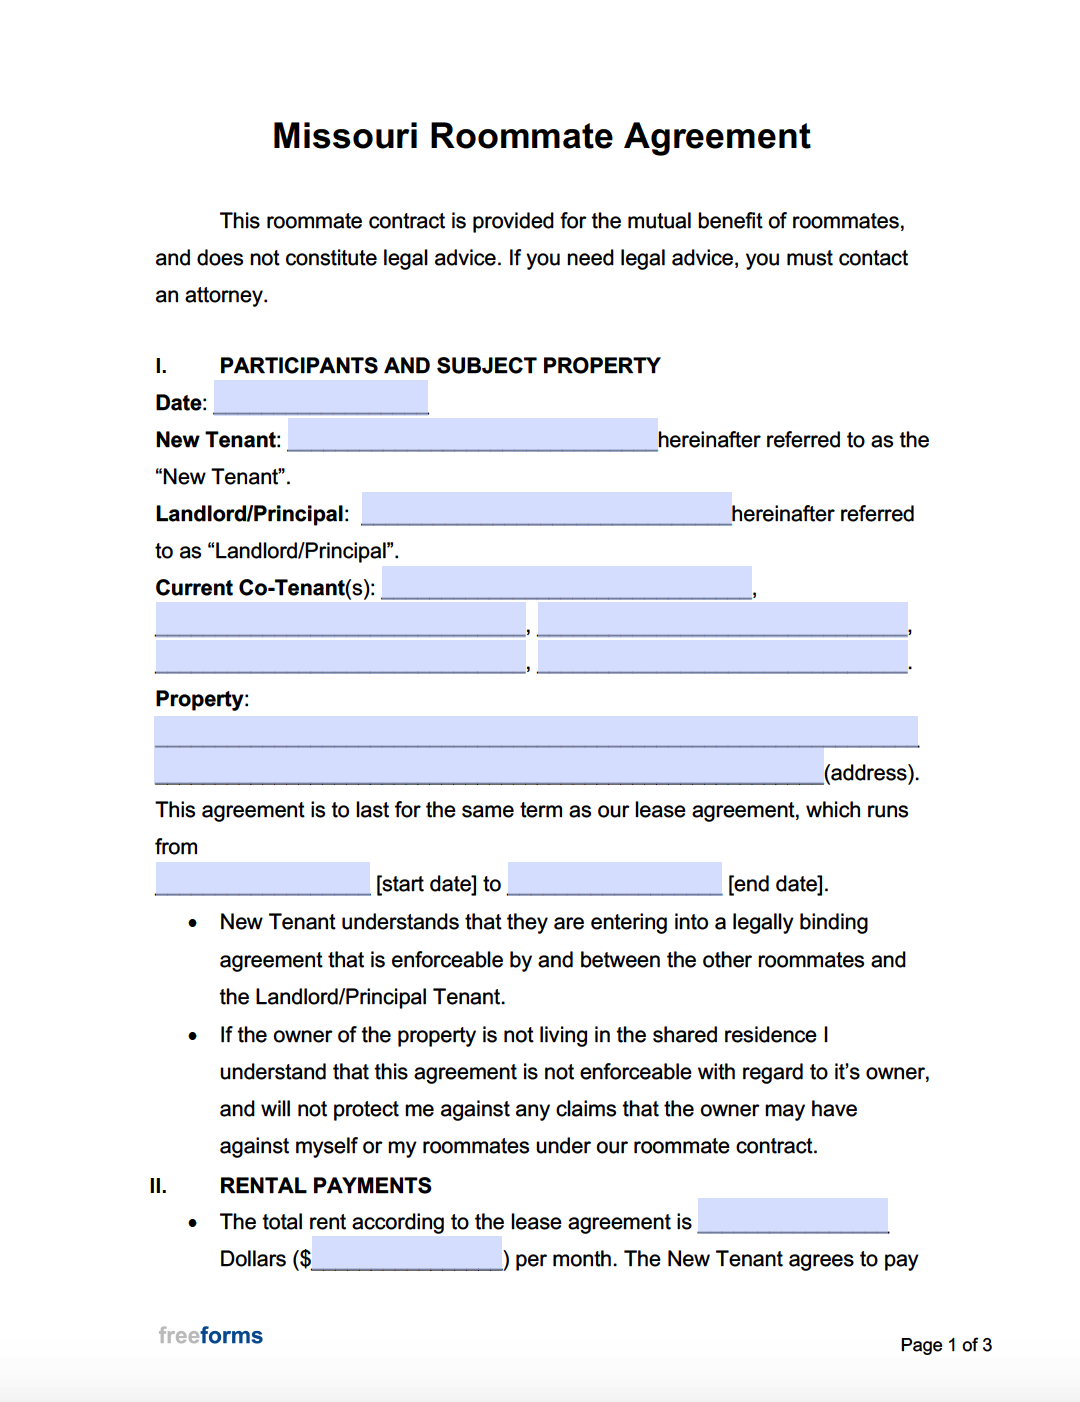 Free Missouri Roommate Agreement Template  PDF  WORD Inside free roommate rental agreement template